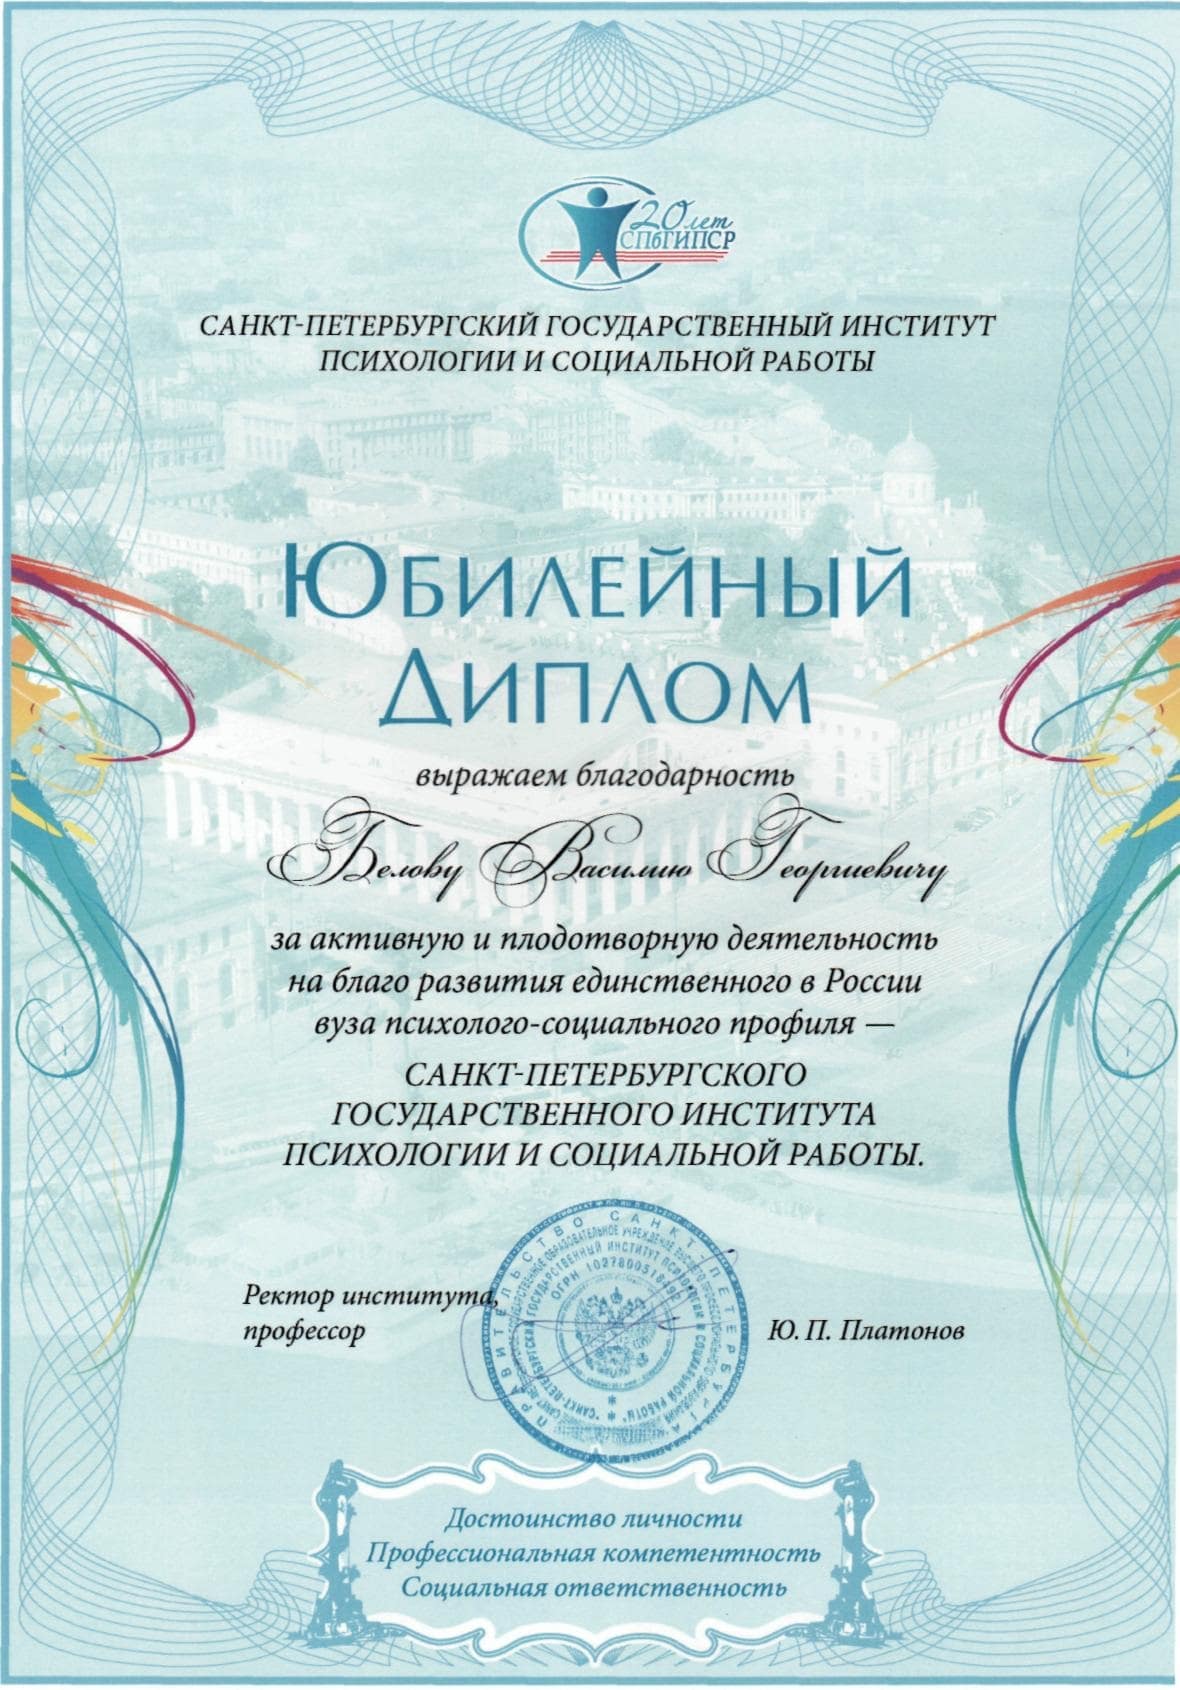 Благодарность от Санкт-Петербургского государственного института психологии и социальной работы